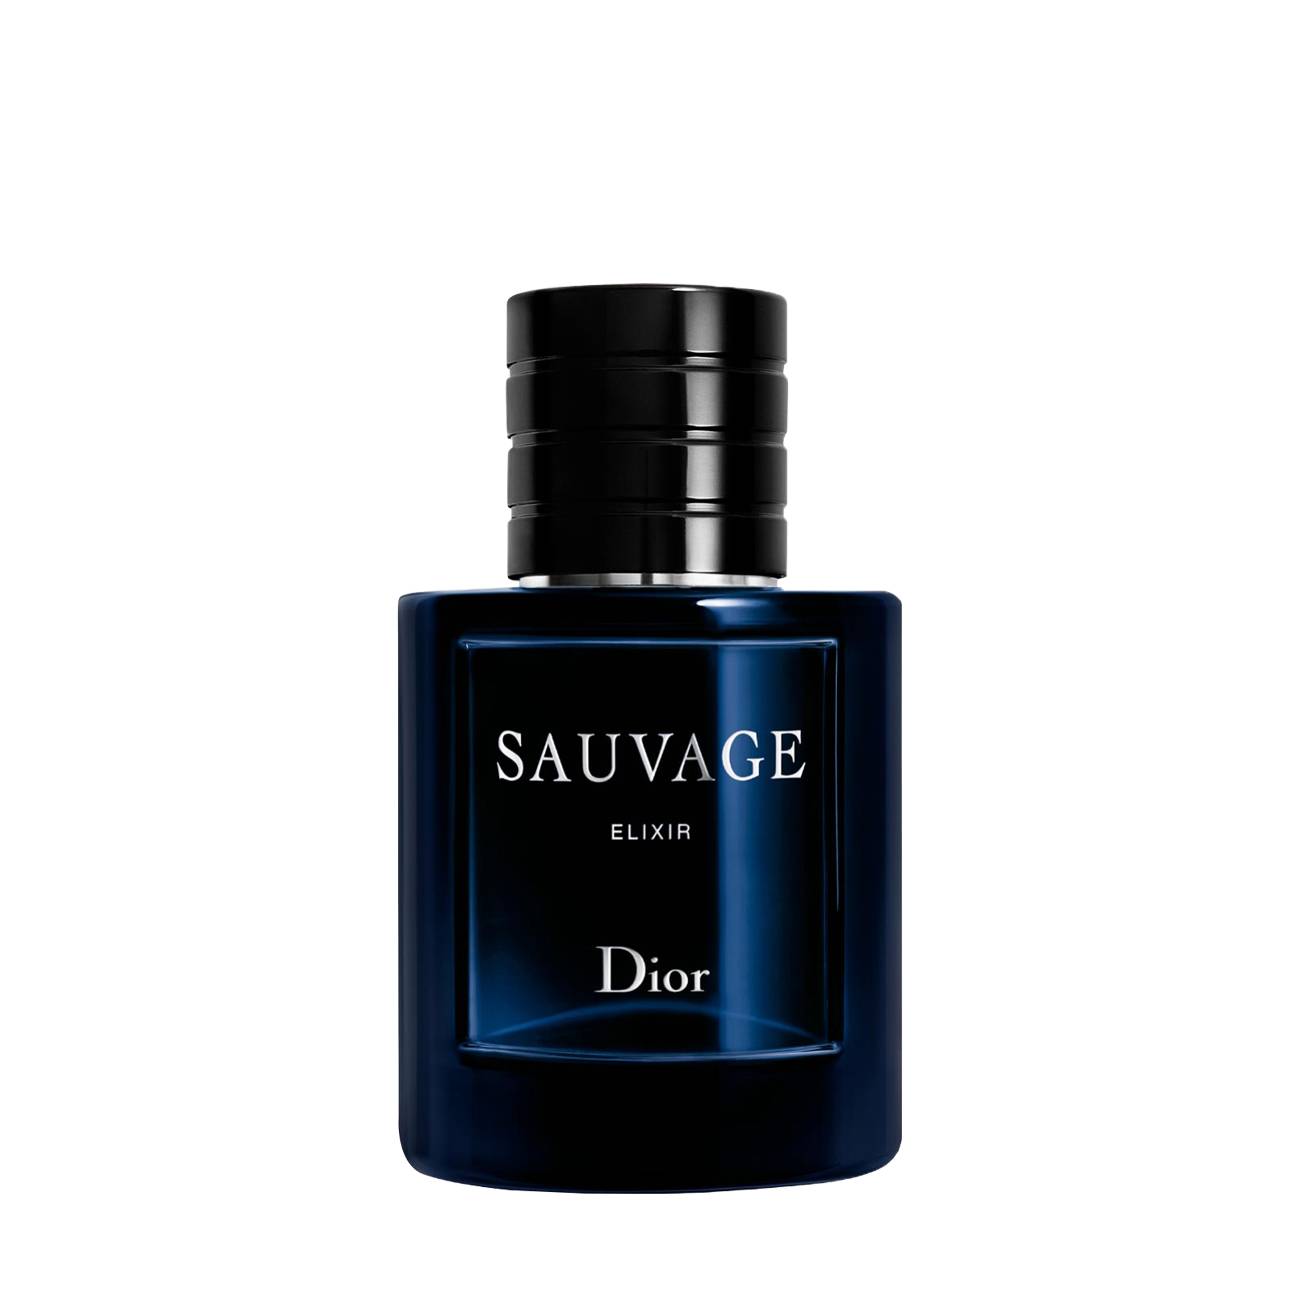 Sauvage Elixir 60 ml Dior bestvalue.eu